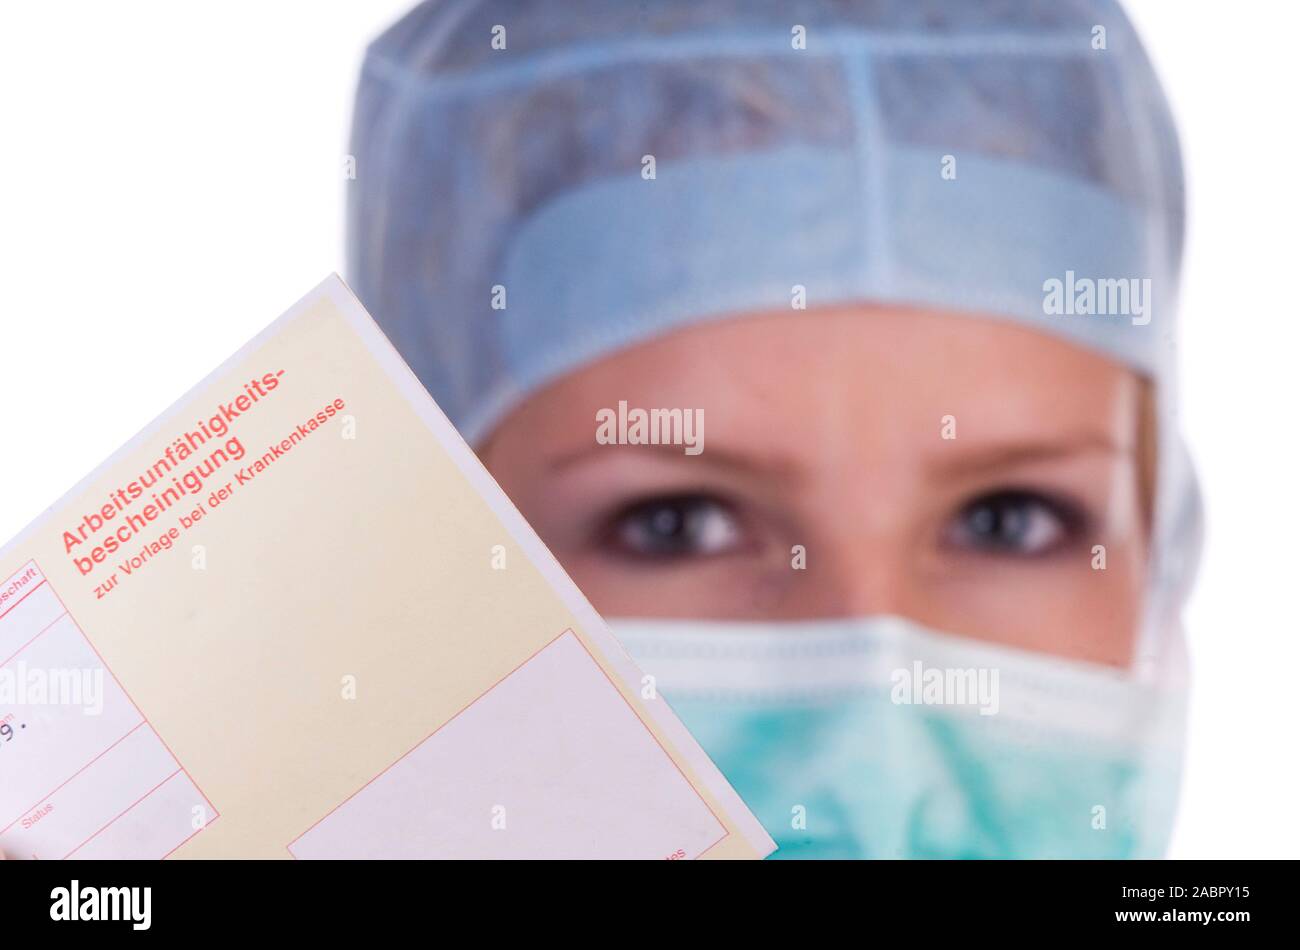 Arzt, Ärztin, OP-Schwester, mit Stethoskop, signor: Sì, 25,30,35, Jahre, Foto Stock